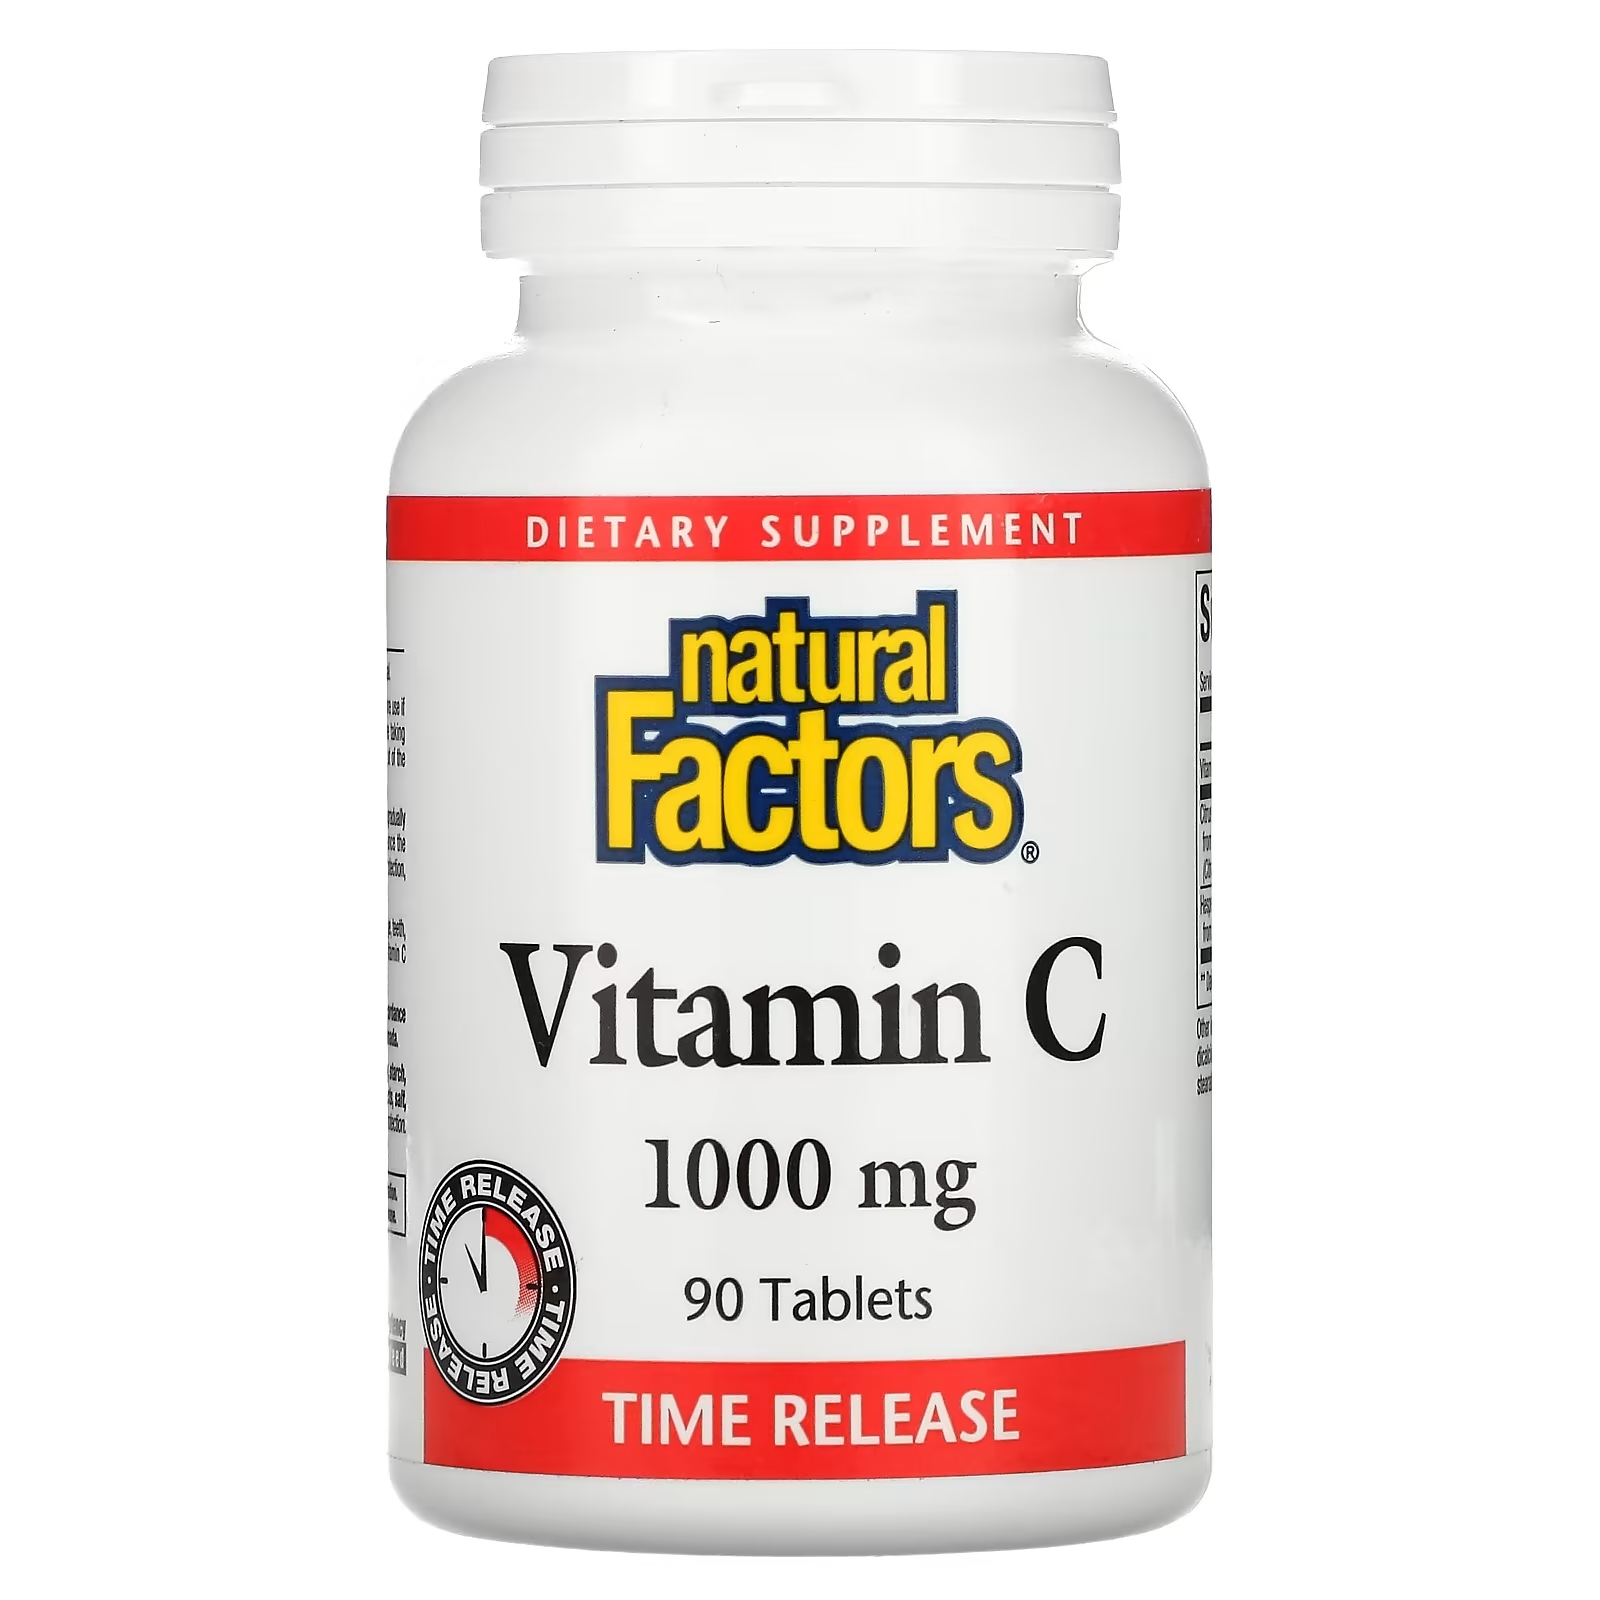 Natural Factors витамин C 1000 мг с медленным высвобождением, 90 таблеток витамин b2 natural factors 100 мг 90 таблеток